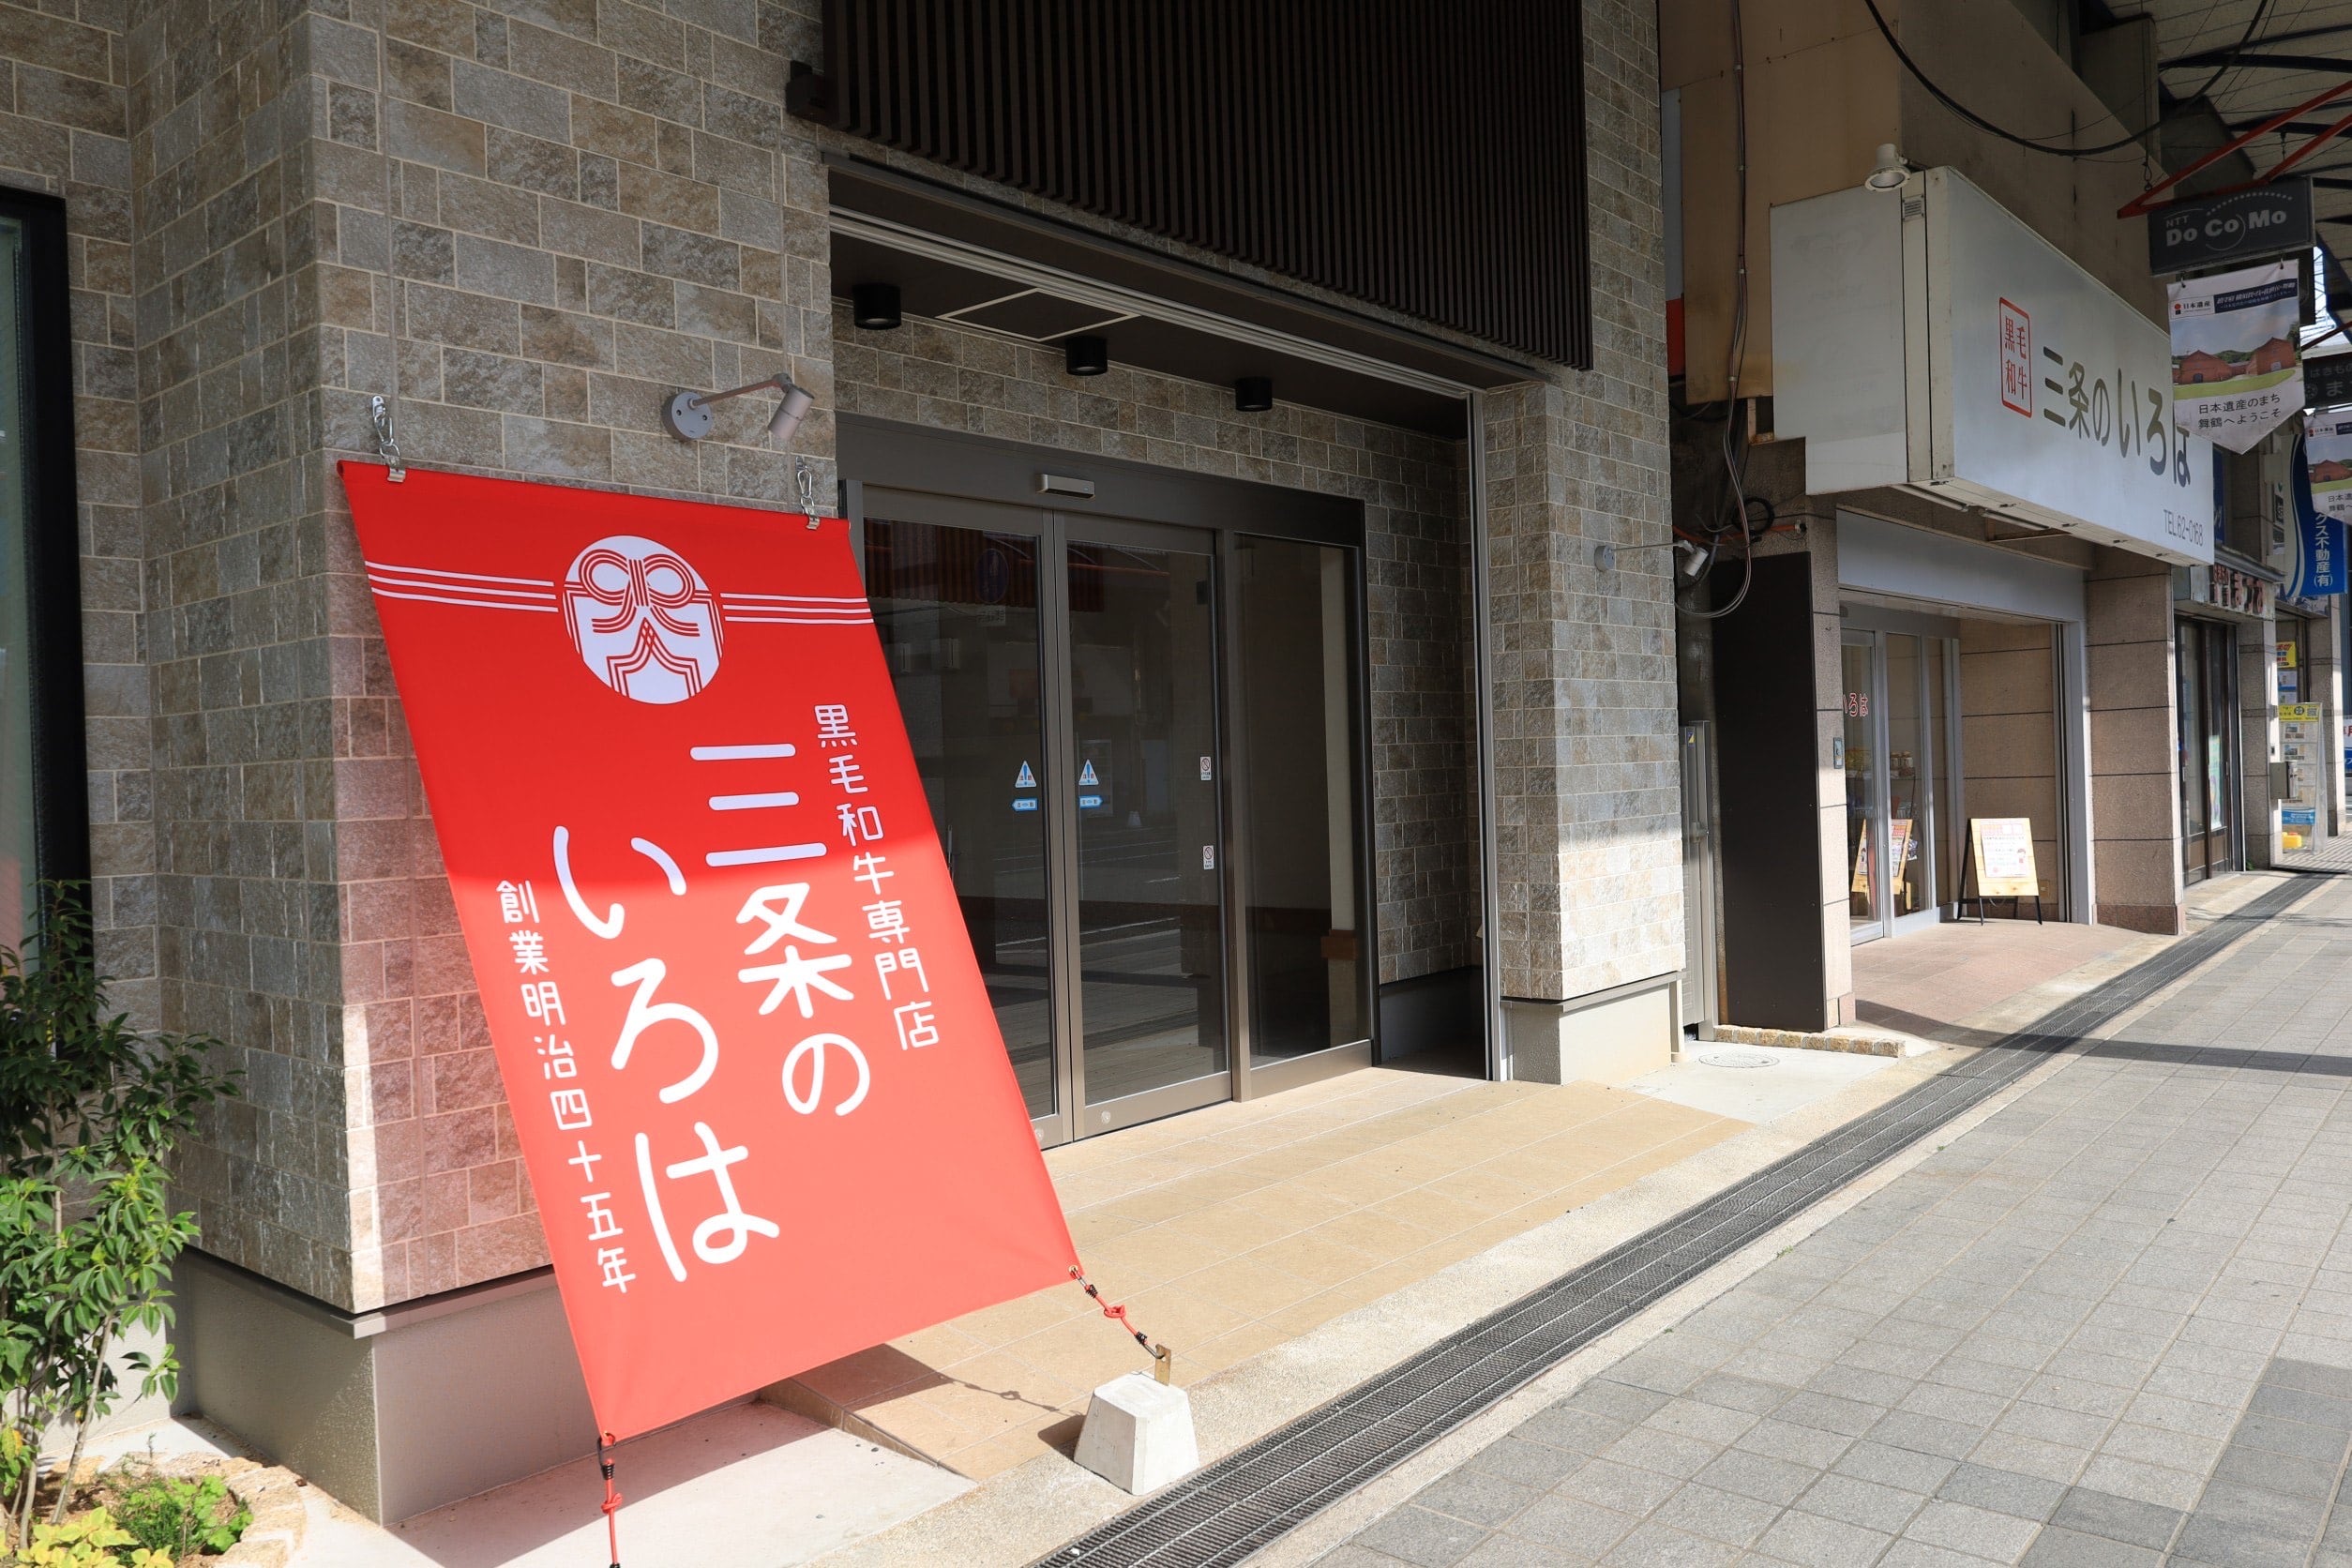 明治45年創業。港町京都舞鶴の老舗精肉店です。